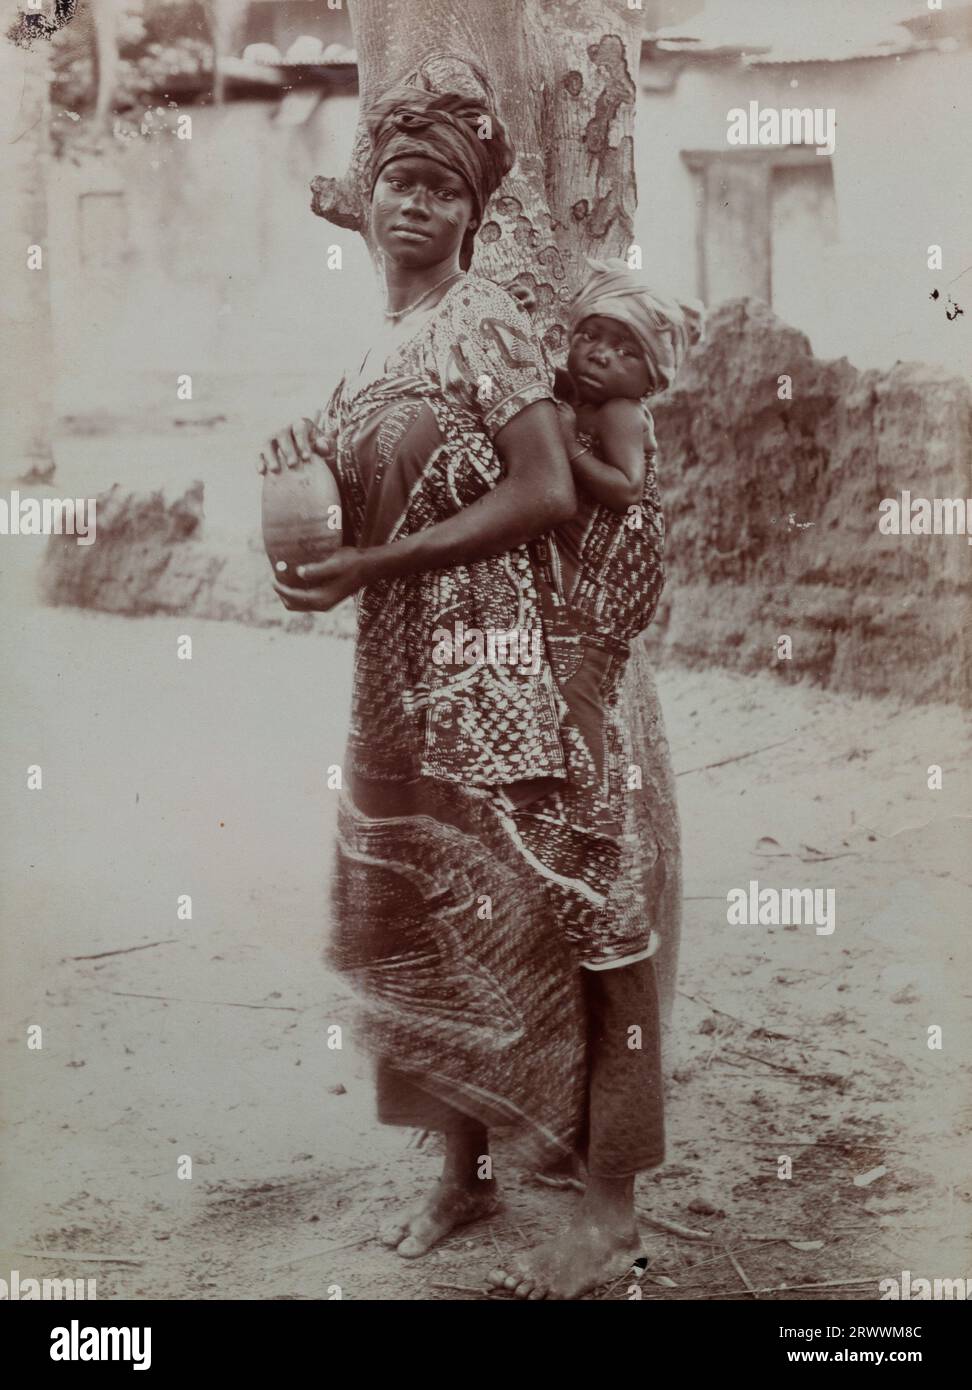 Eine Afrikanerin steht neben einem Baum und trägt ein Wickelkleid, das ein kleines Kind auf dem Rücken hält. Das Kind ist etwa ein Jahr alt. Beide tragen Kopfbedeckungen und die Frau hält einen Topf. Häuser sind hinter ihr zu sehen. Stockfoto